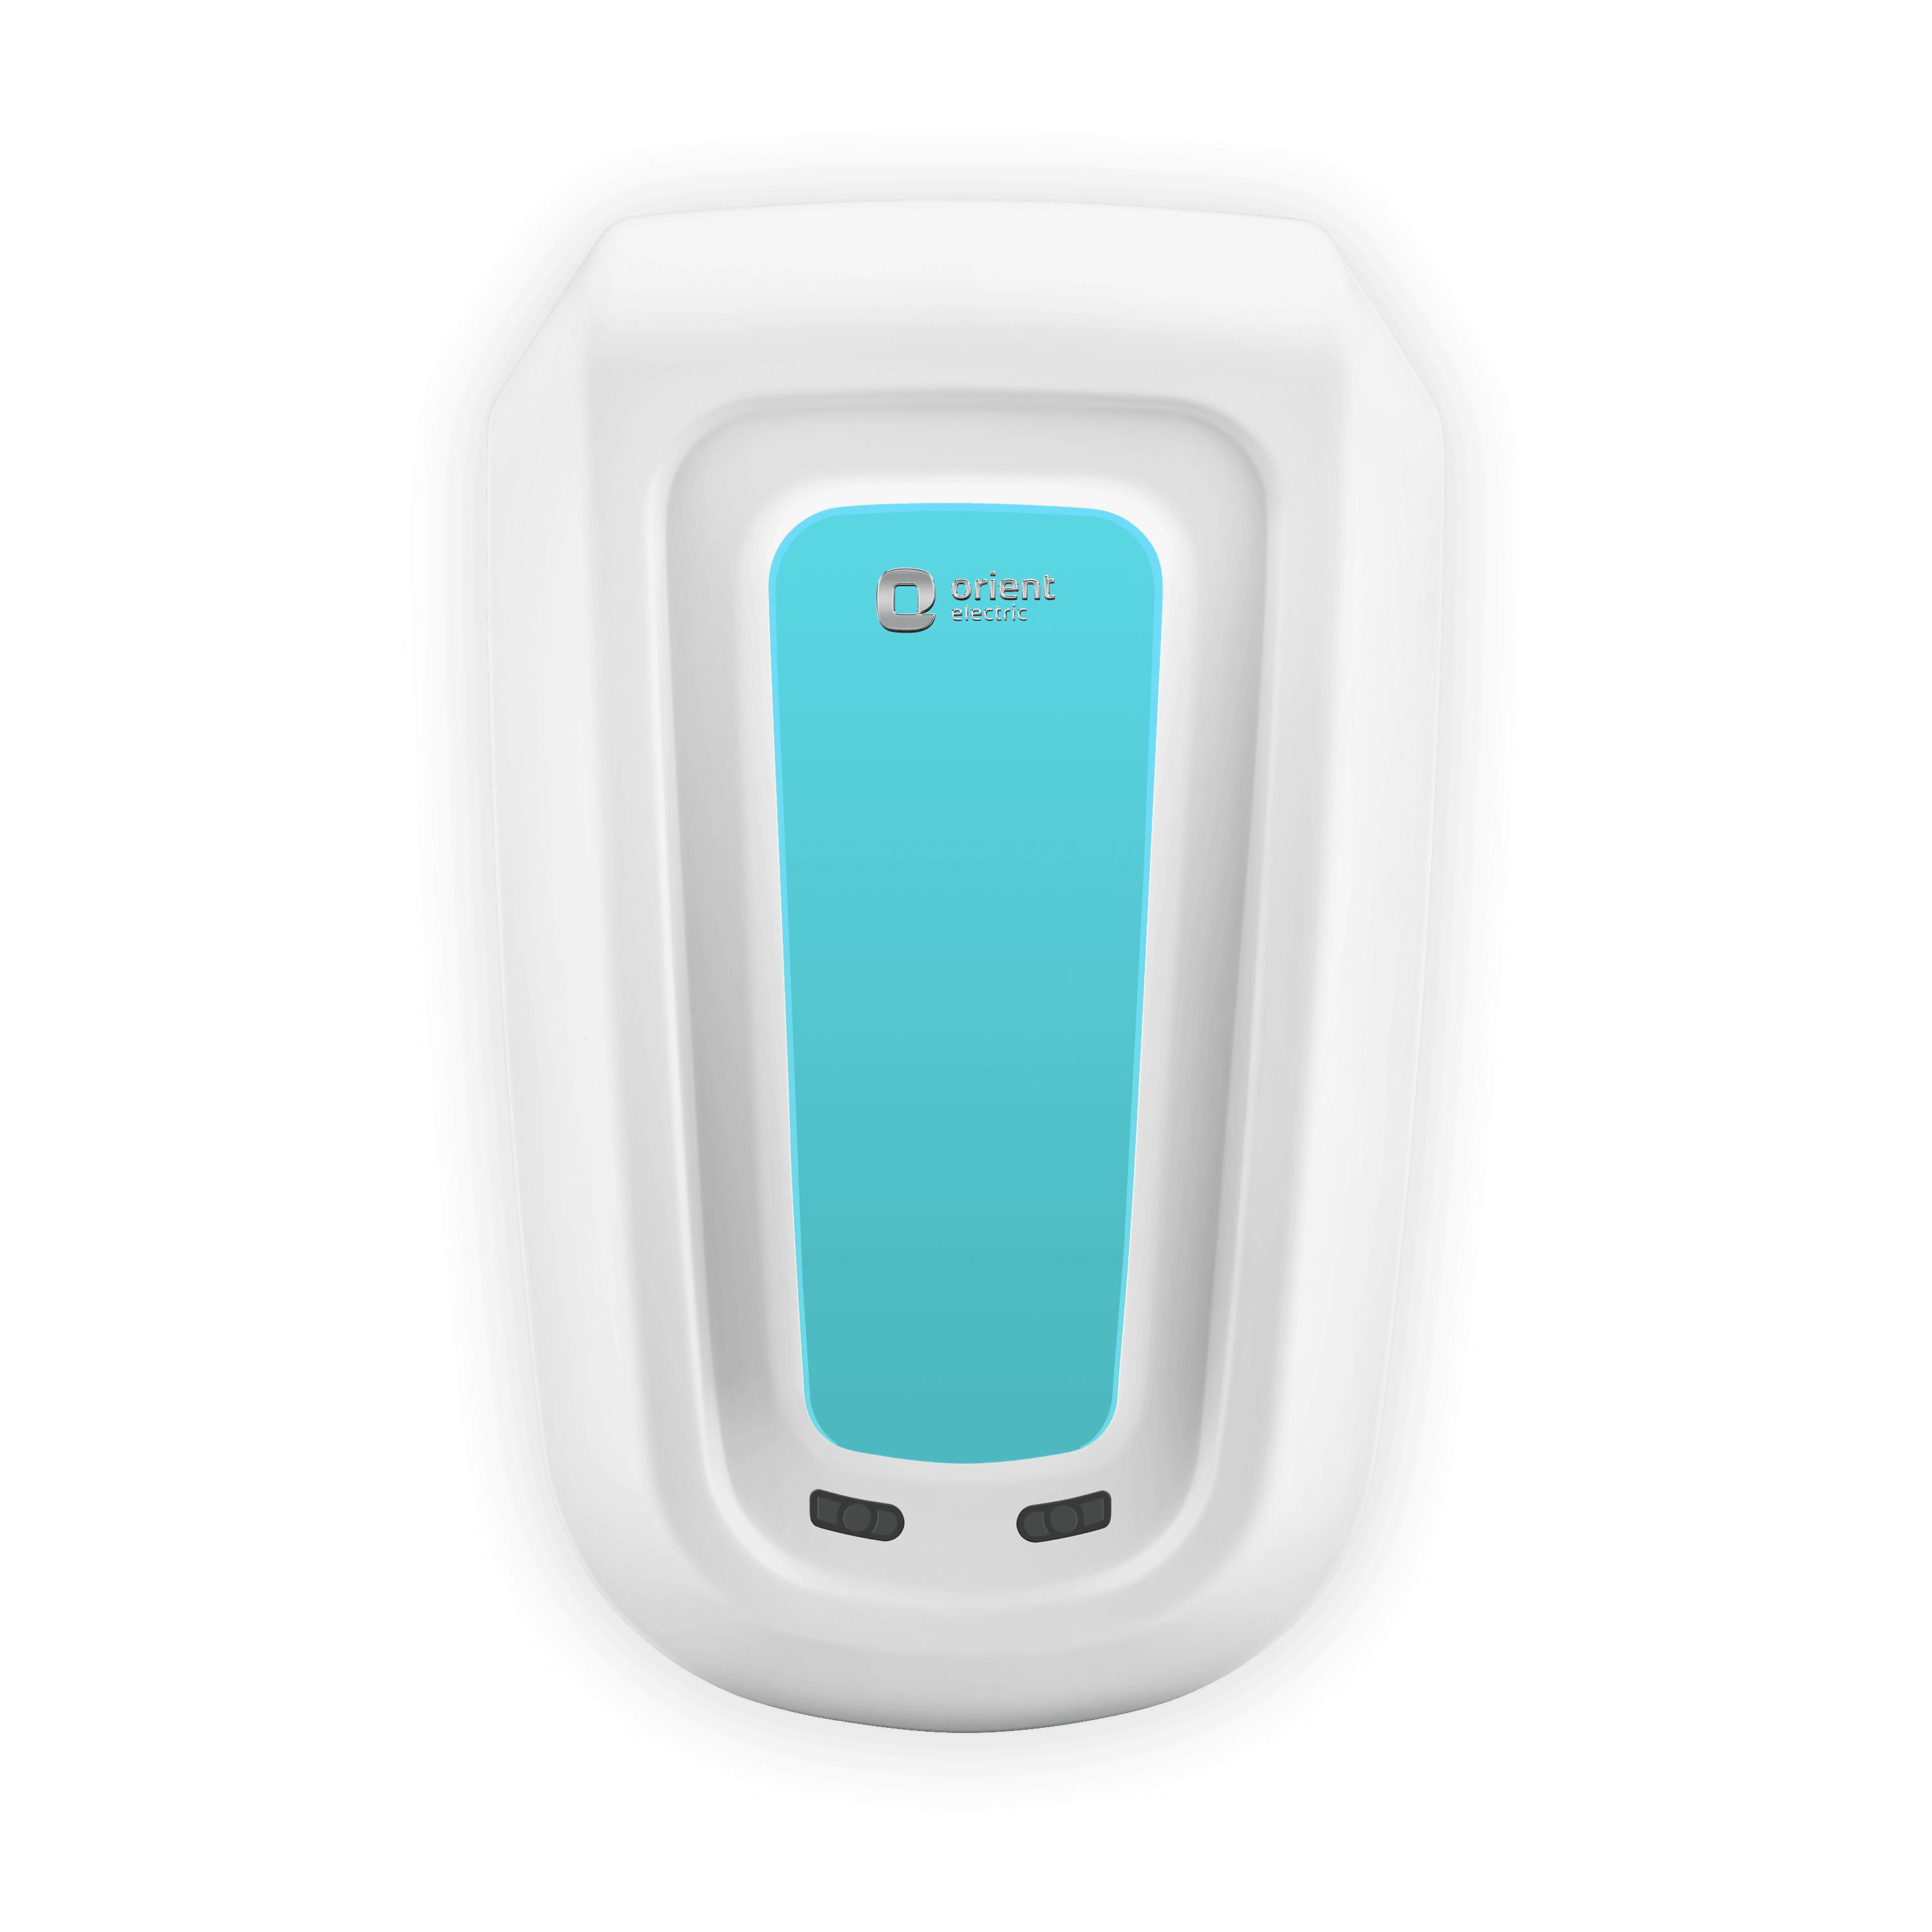 Rapidus 5.5L Instant Water Heater (Geyser) White